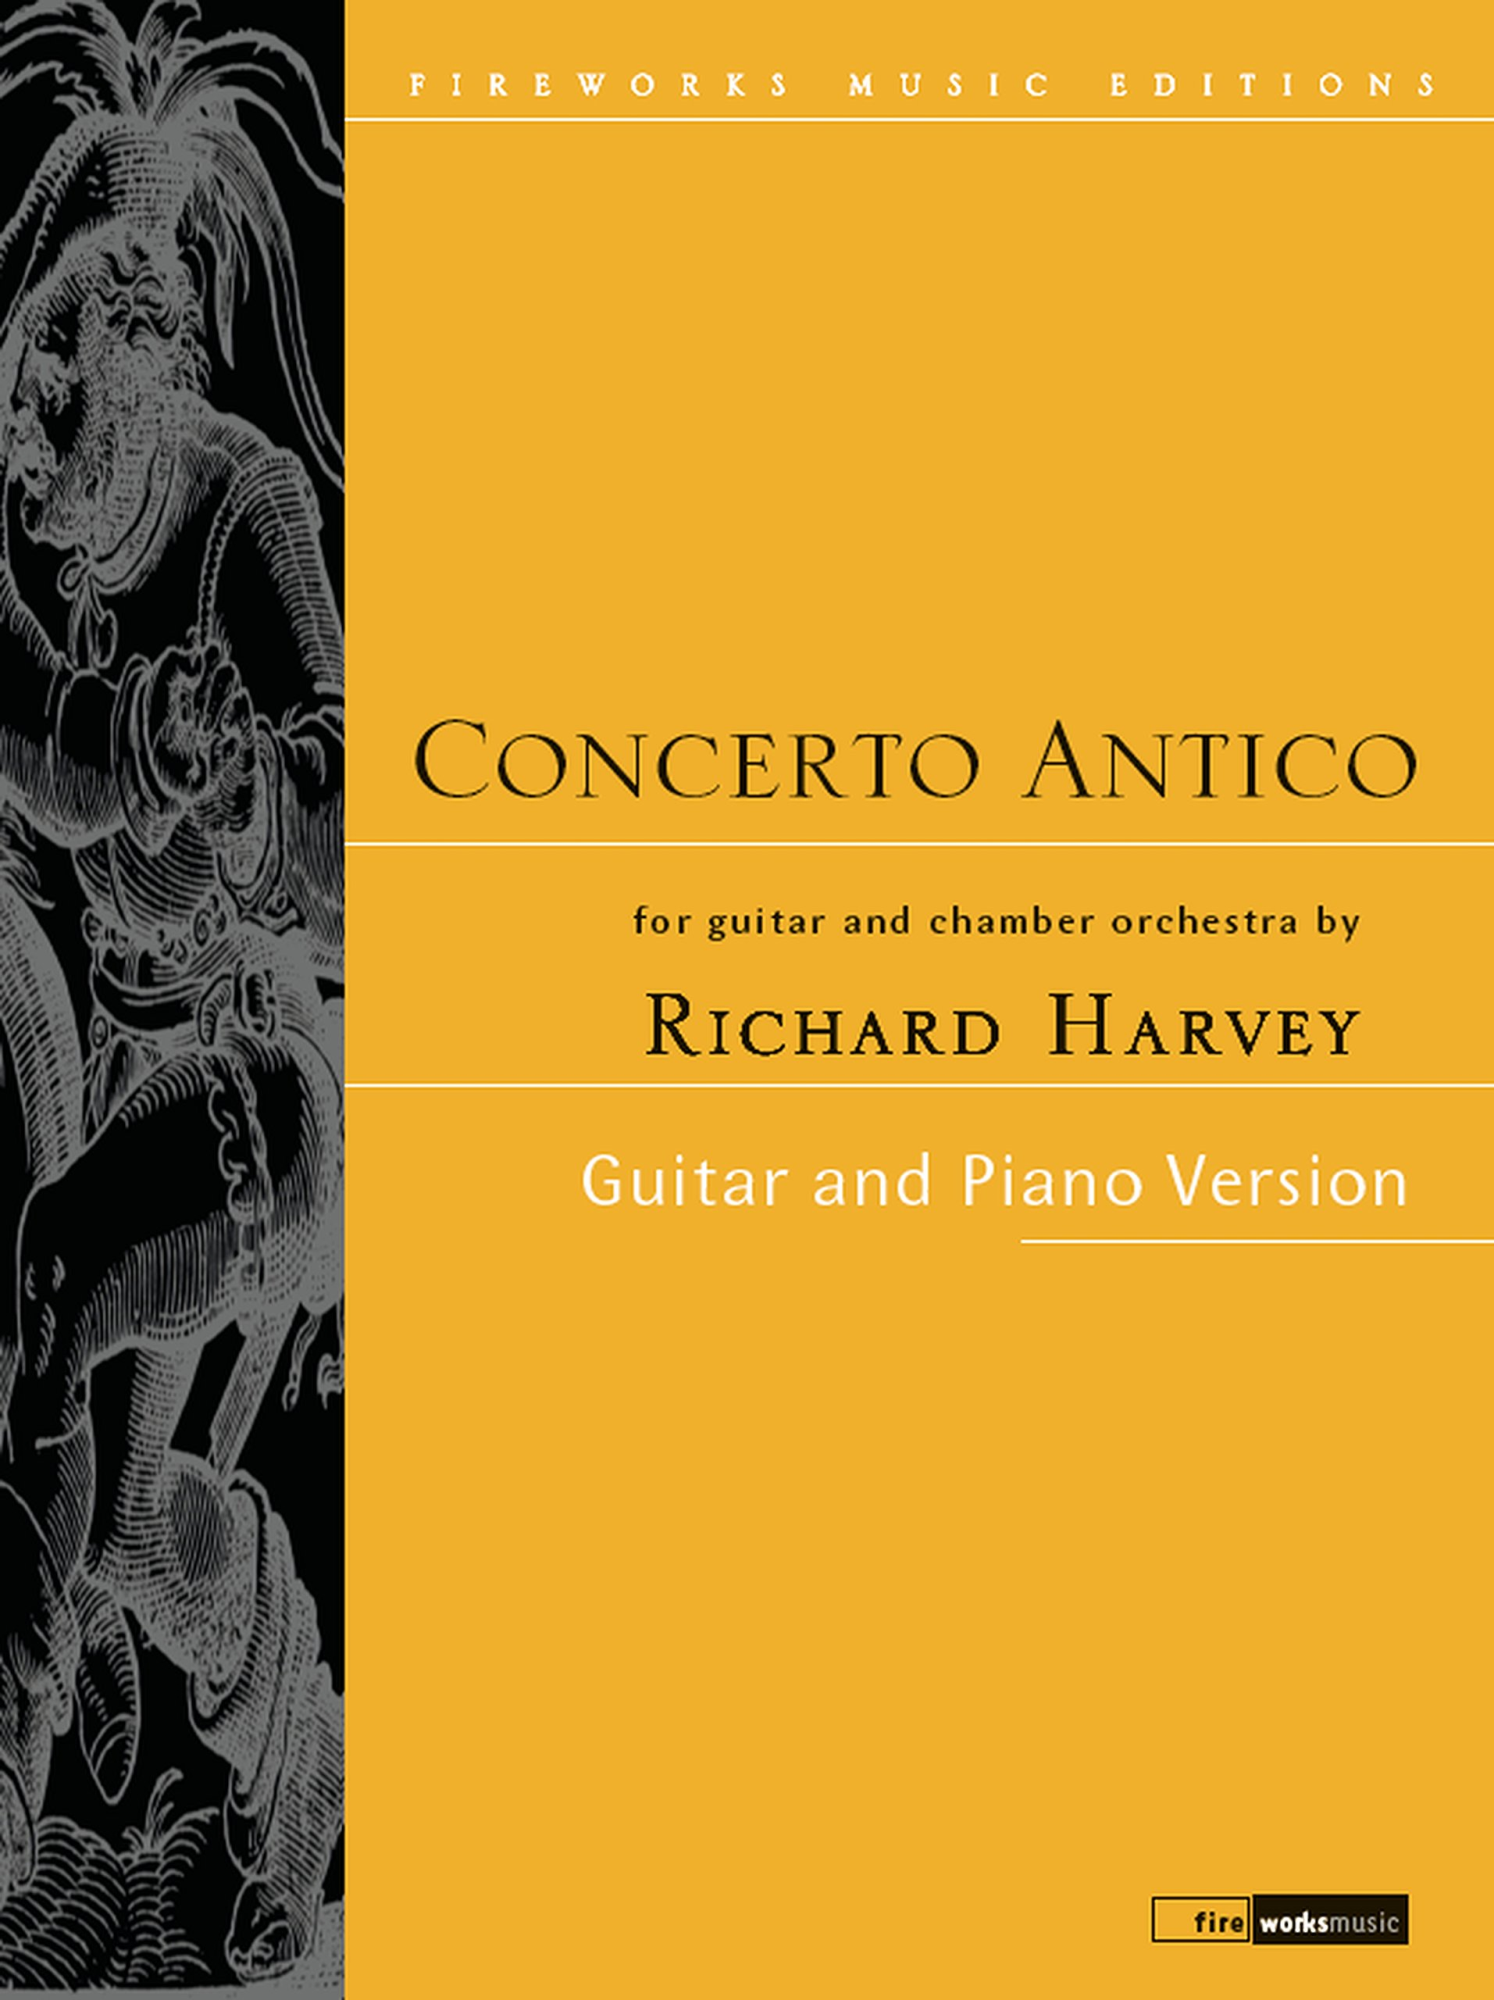 Libri Richard Harvey - Concerto Antico Guitar & Piano Version NUOVO SIGILLATO, EDIZIONE DEL 01/06/2018 SUBITO DISPONIBILE